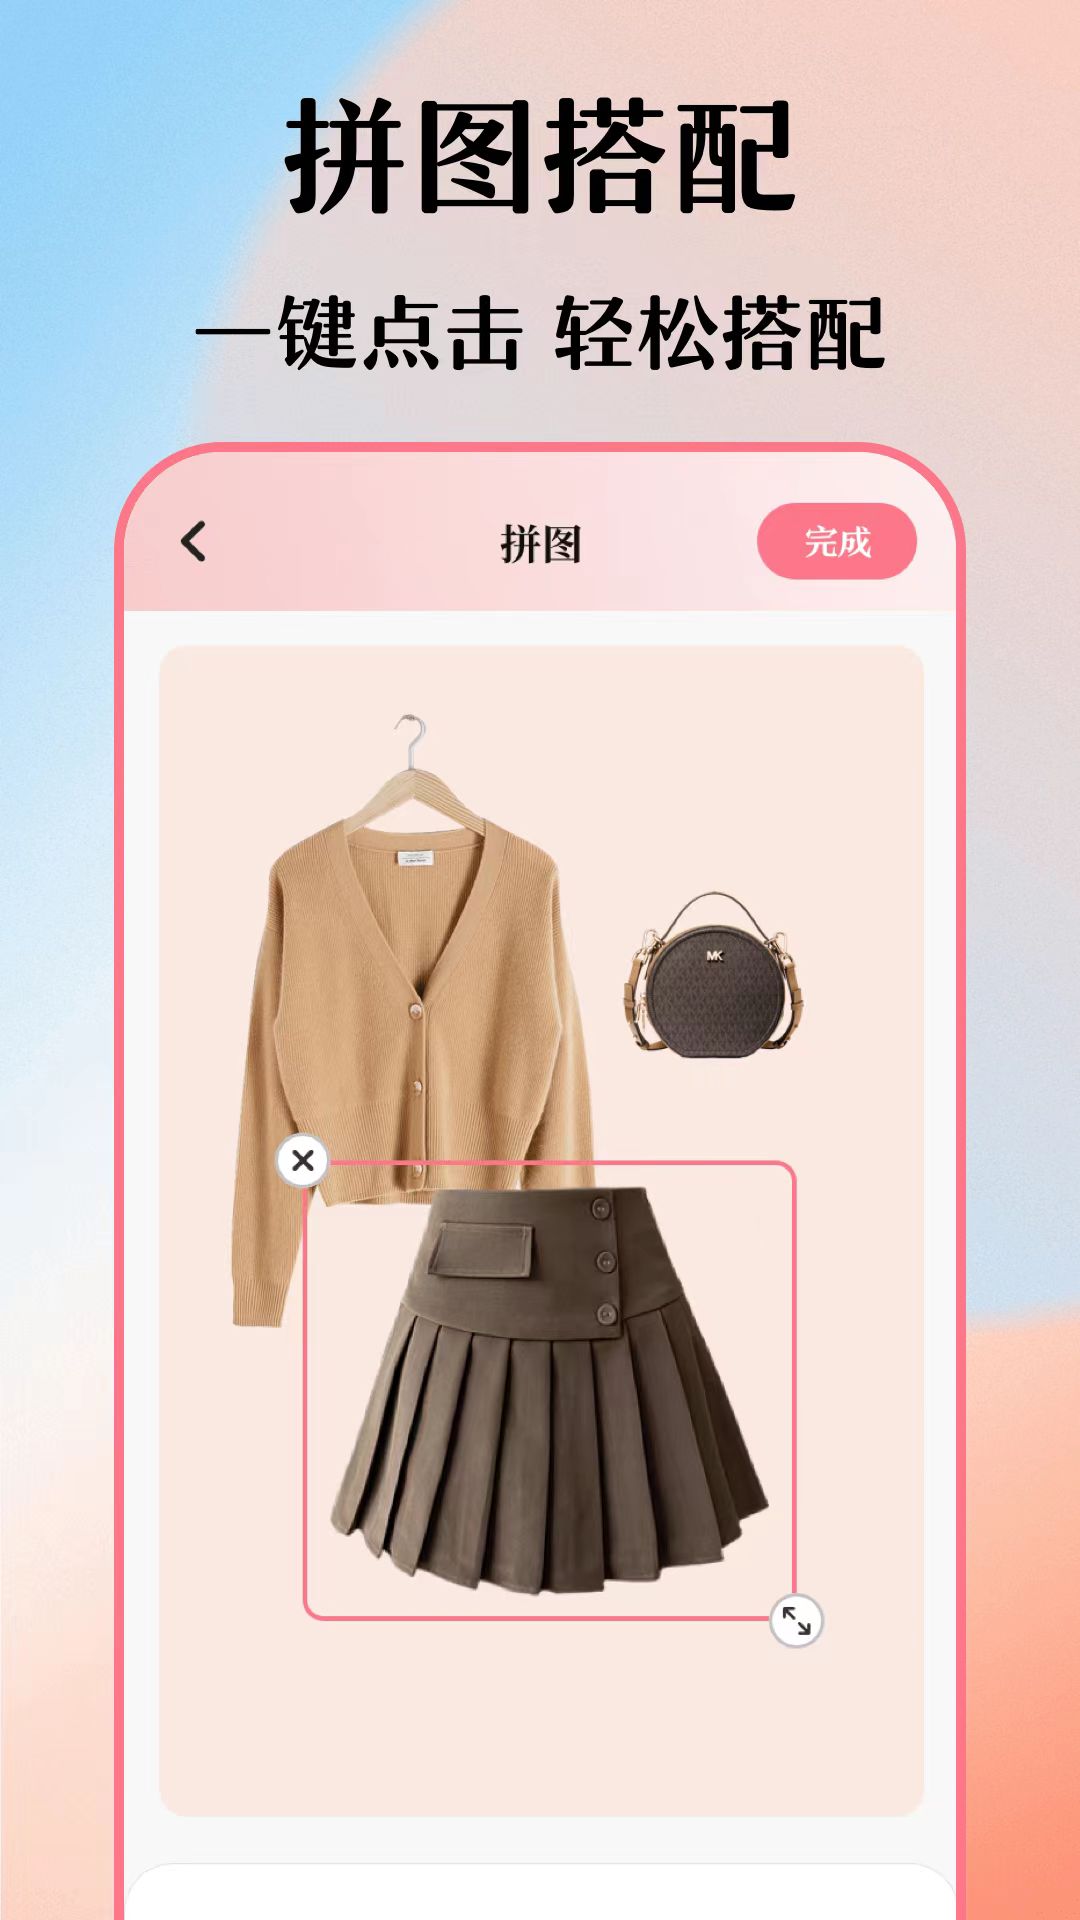 值得分享的电子衣橱app推荐 整理搭配速度快的电子衣橱软件推荐